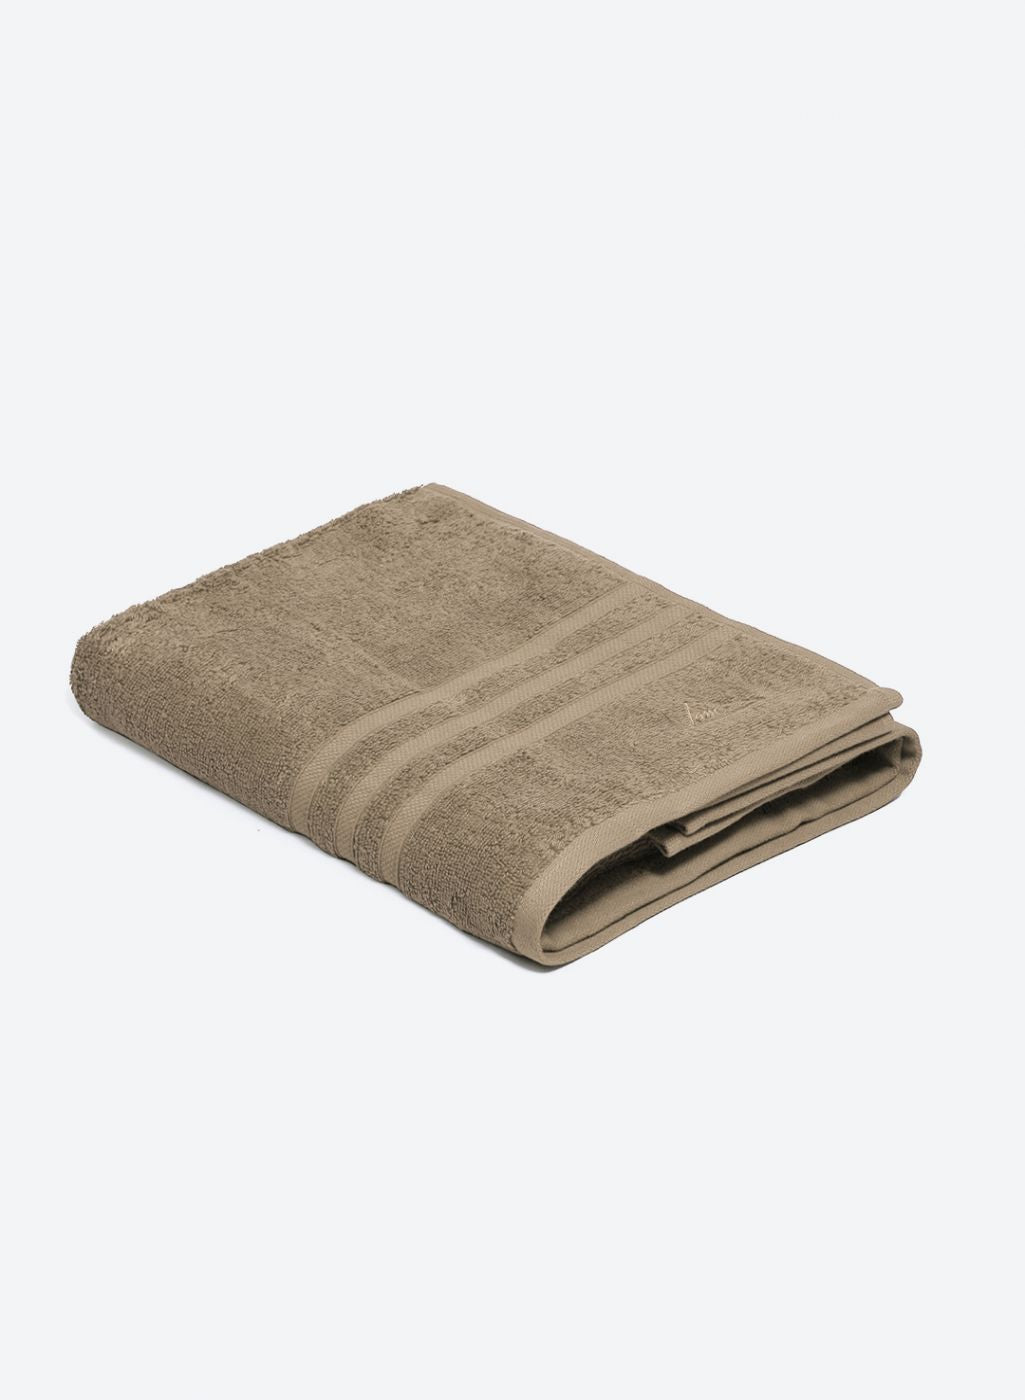 Beige Cotton 525 GSM Bath Towel